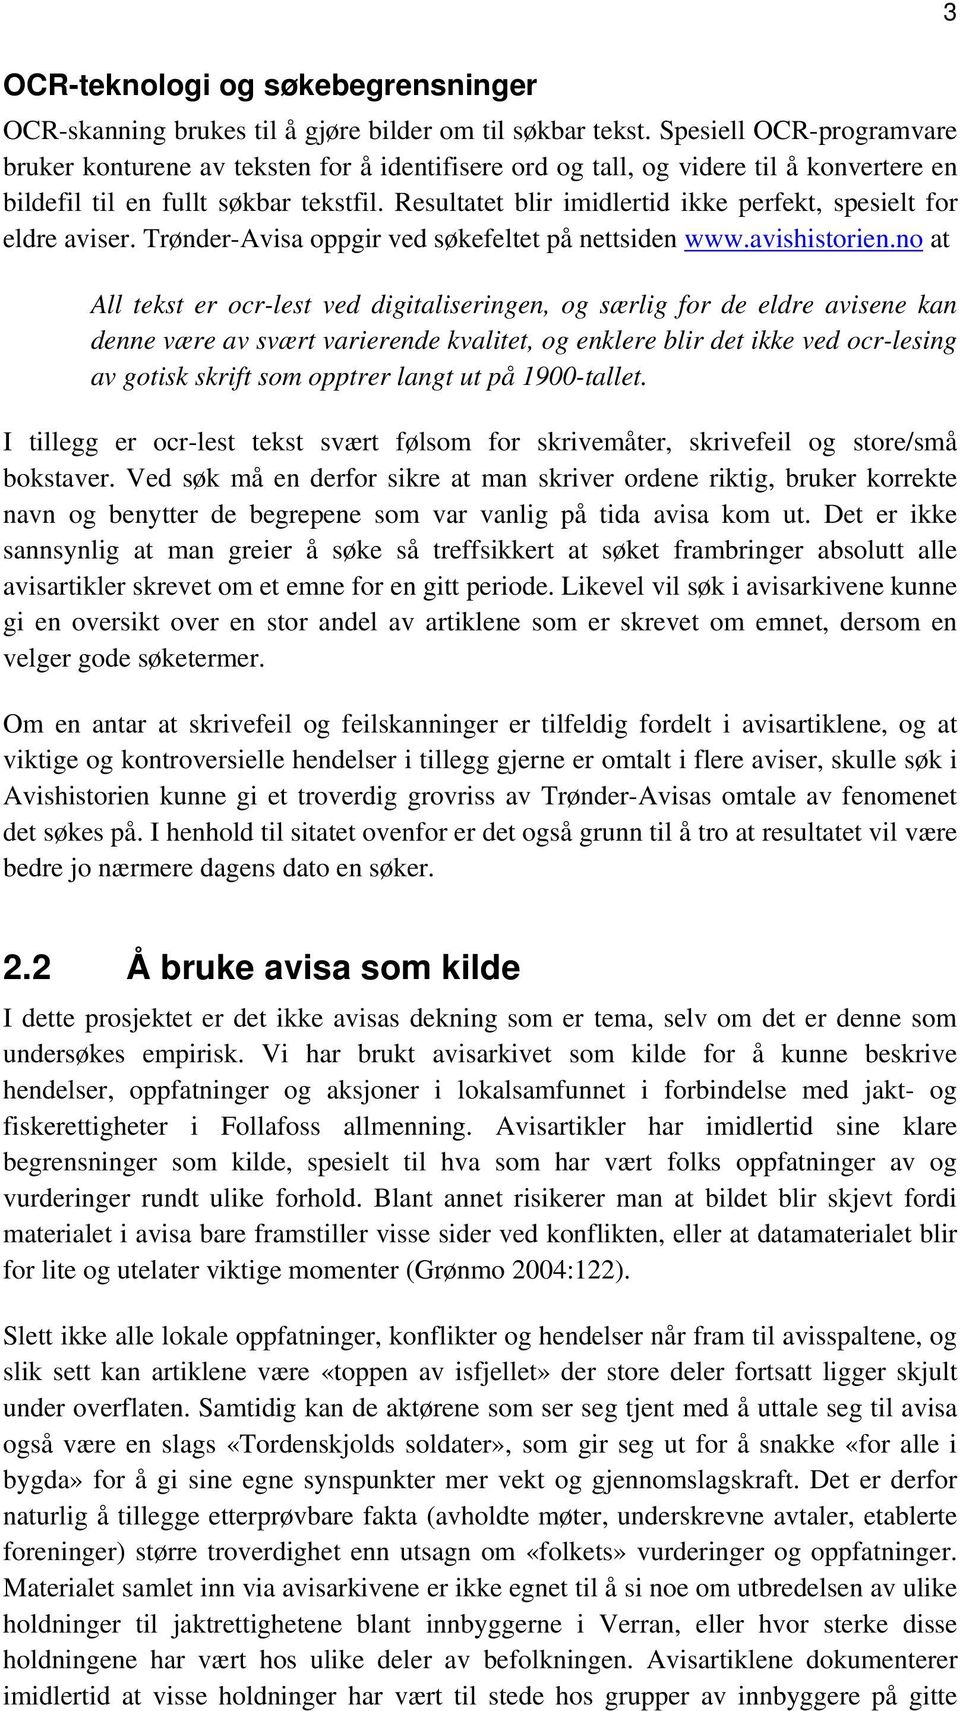 Resultatet blir imidlertid ikke perfekt, spesielt for eldre aviser. Trønder-Avisa oppgir ved søkefeltet på nettsiden www.avishistorien.